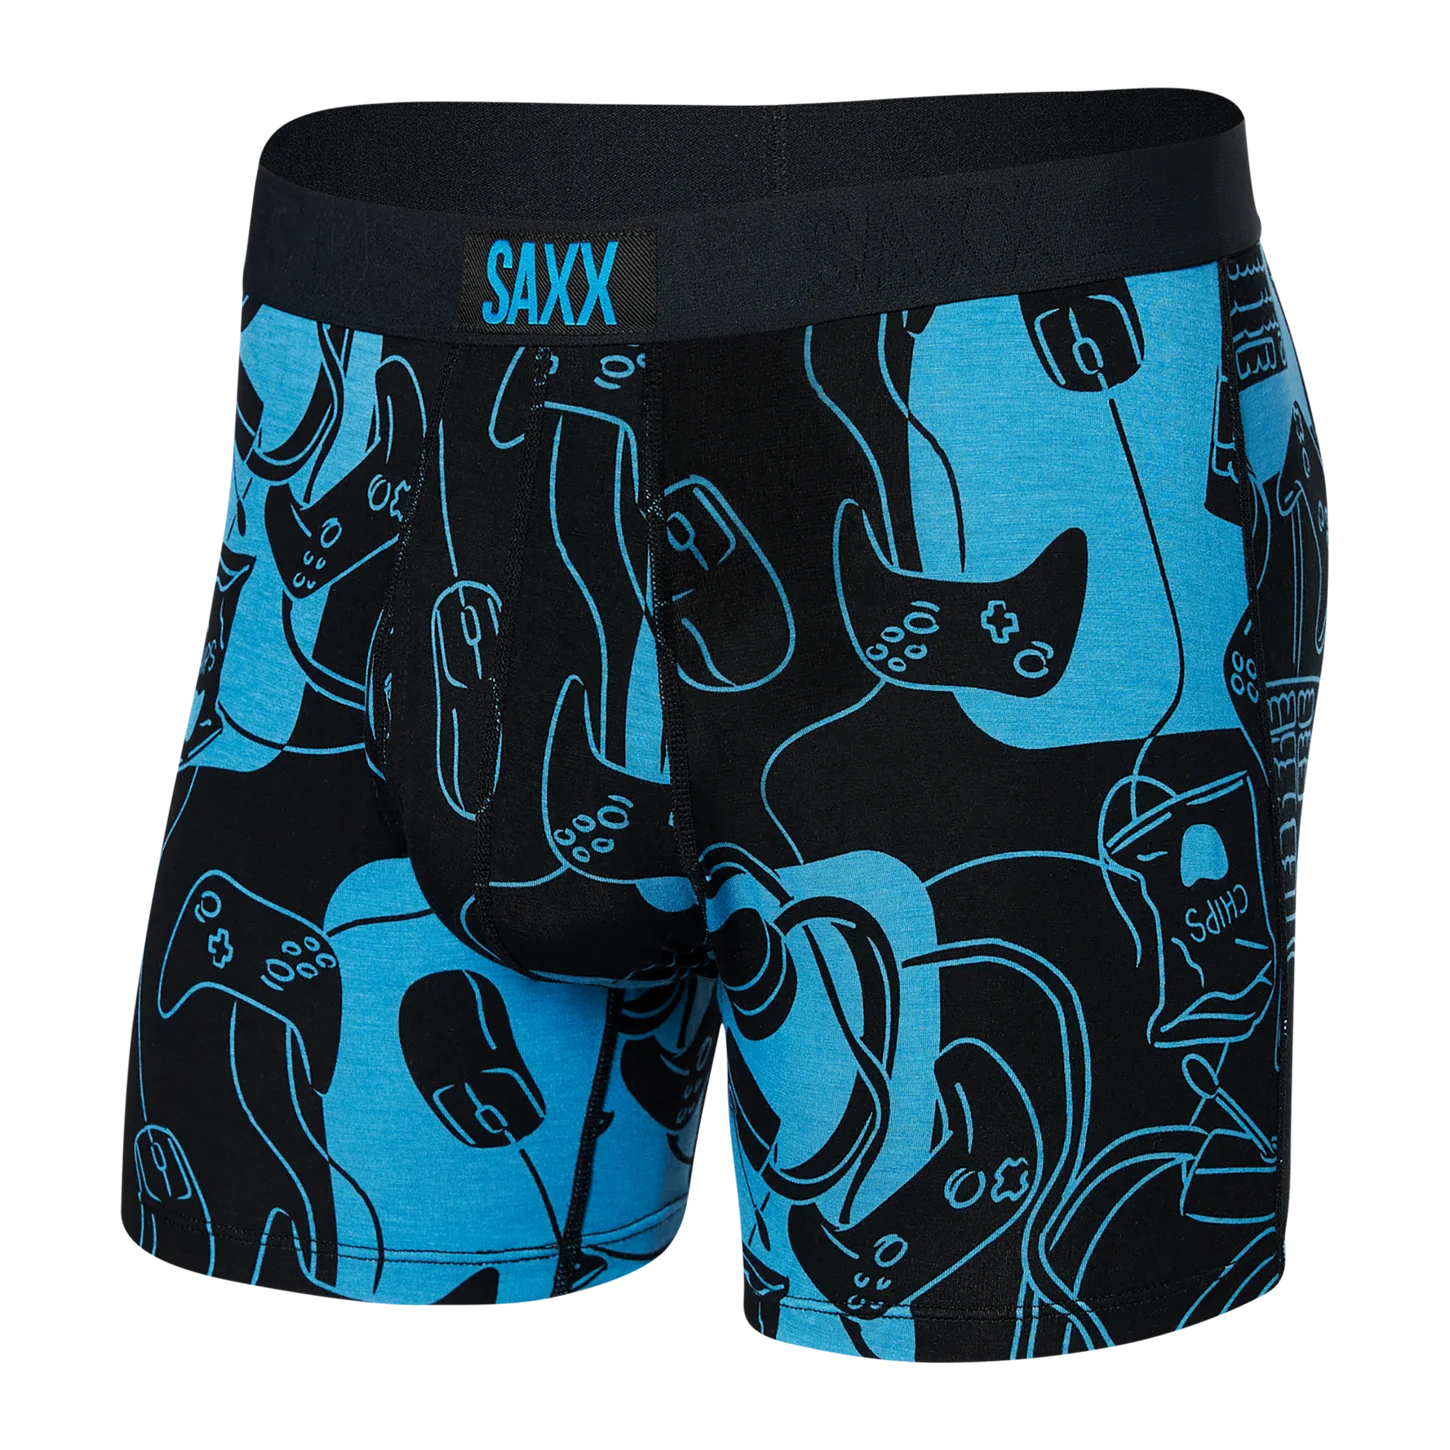  SAXX Men's Underwear - Ultra Super Soft Boxer Briefs